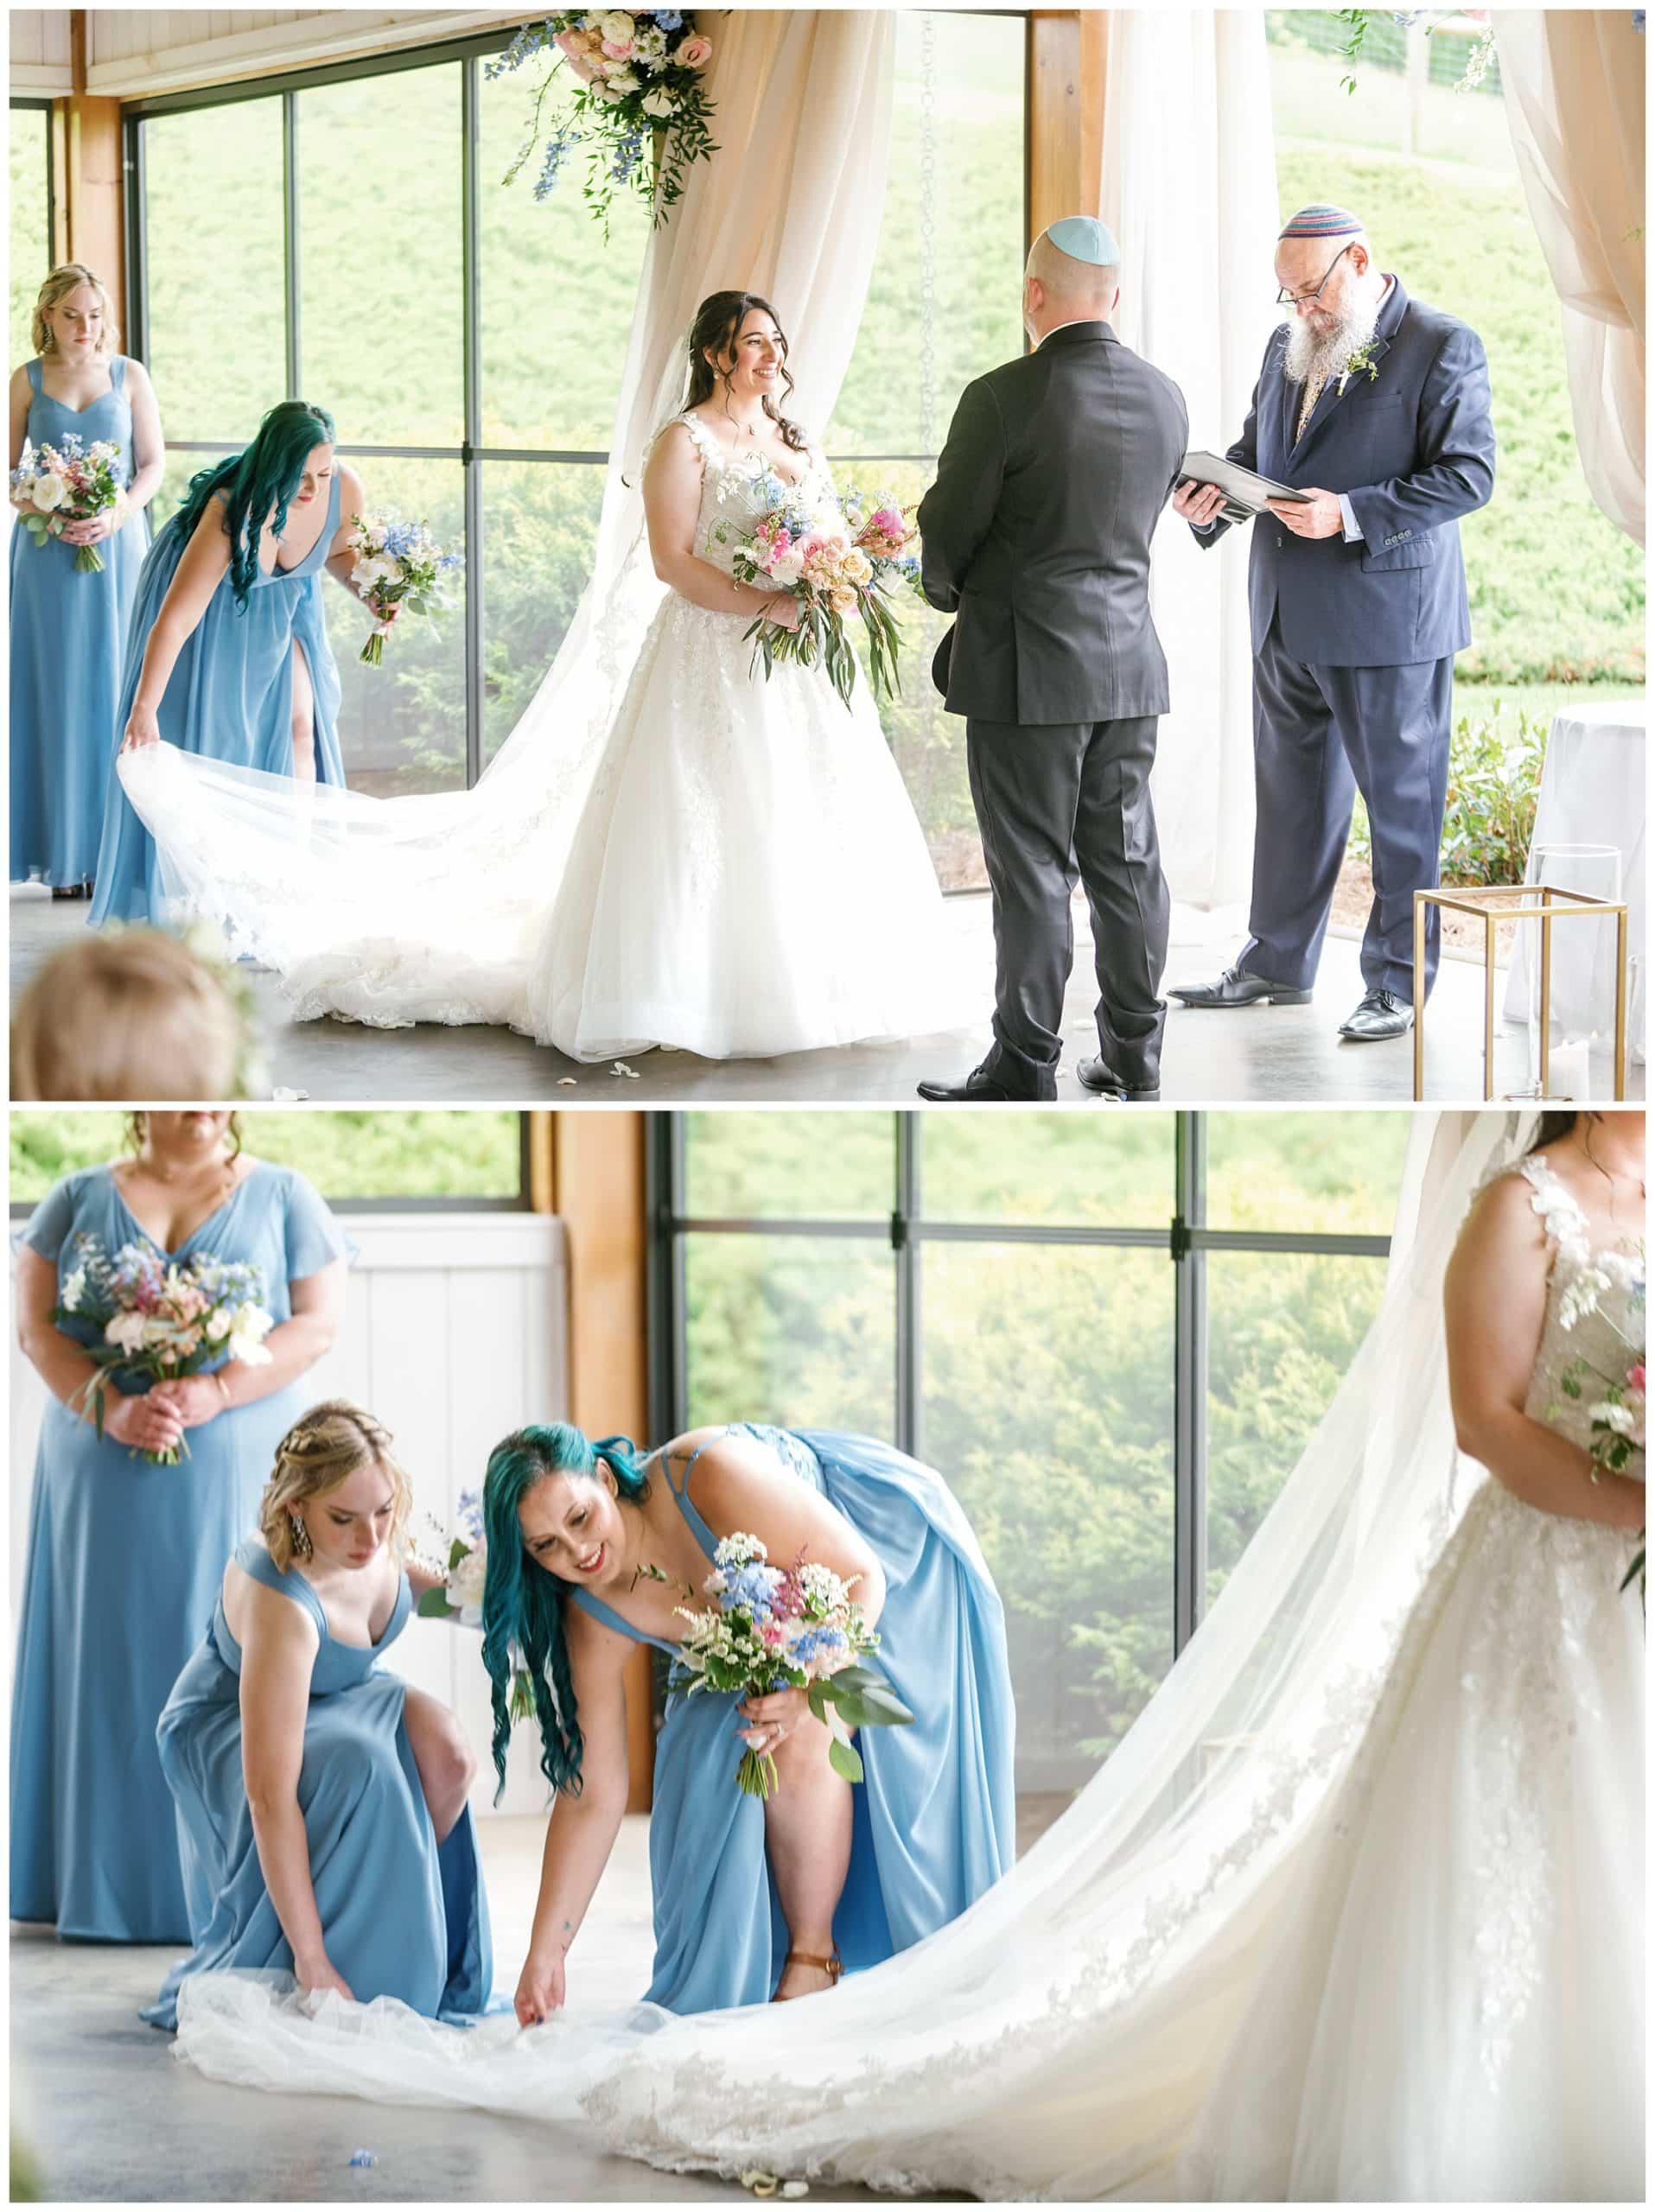 Bridemaids straighten train and veil of bride. 